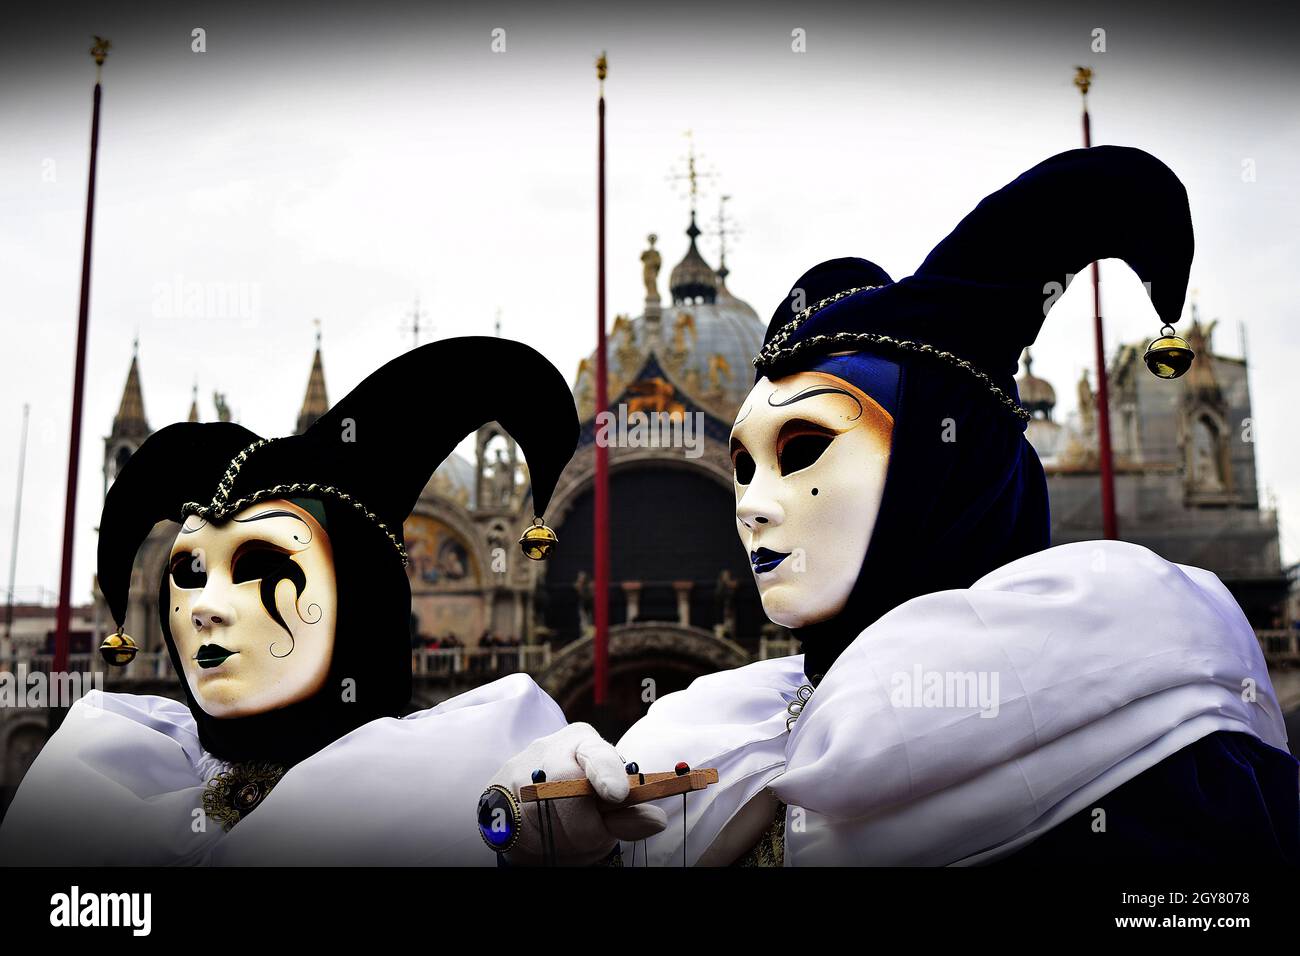 VENECIA, ITALIA - 09 de febrero de 2016: Dos joker disfrazaron máscaras en el Carnaval de Venecia con la Basílica de San Marcos en el fondo. Trajes a juego CO Foto de stock